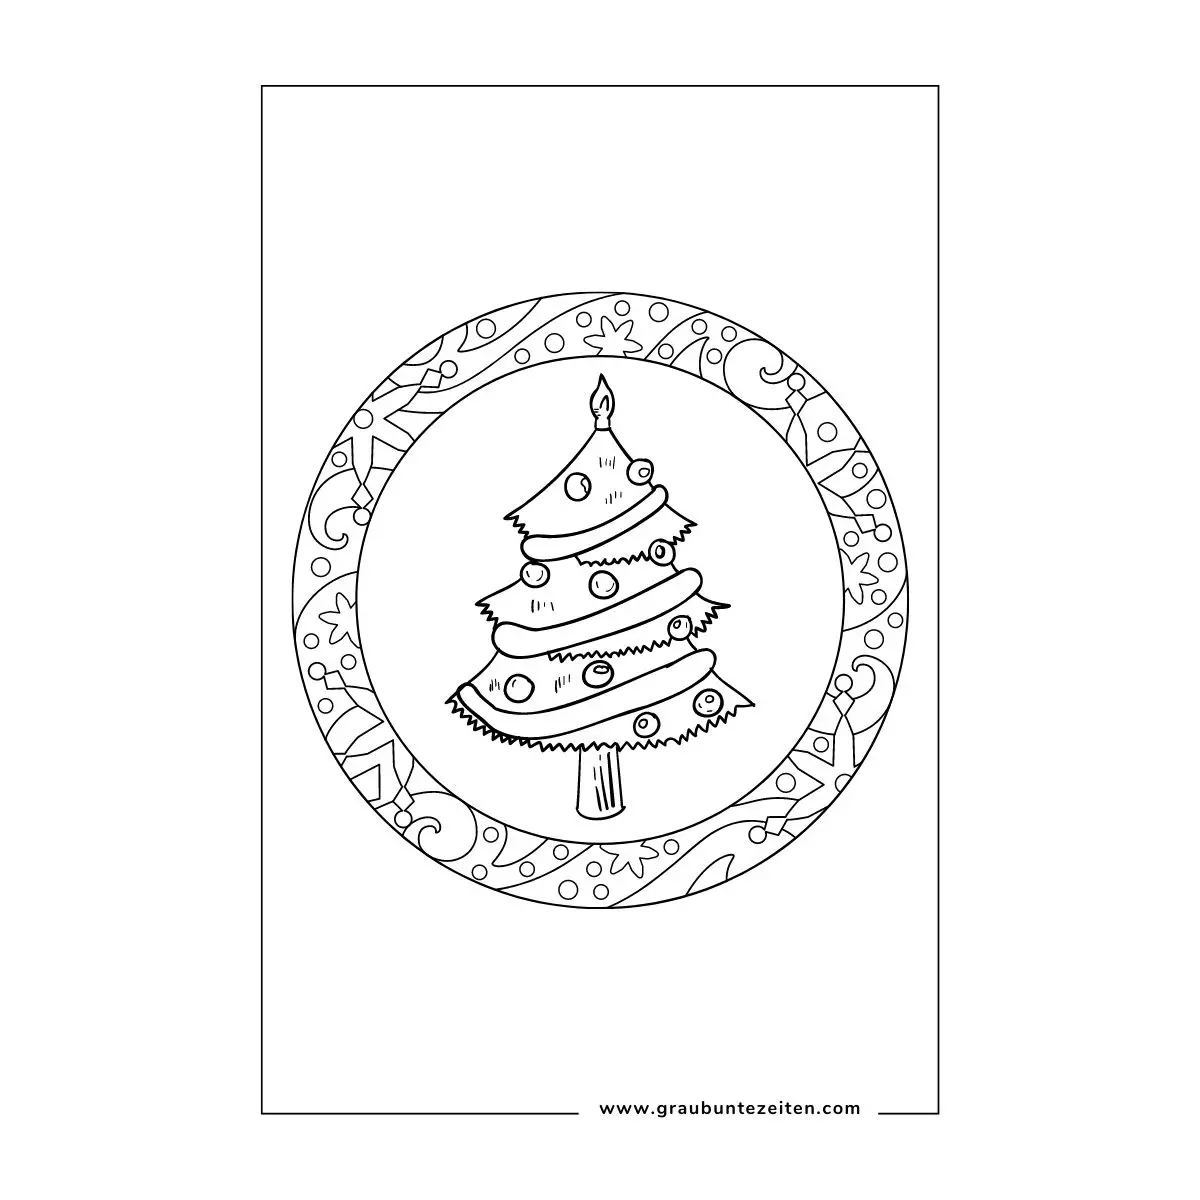 Ausmalbilder Weihnachten kostenlos drucken. Ein verzierter, runder Kranz. In der Mitte ein geschmückter Weihnachtsbaum.